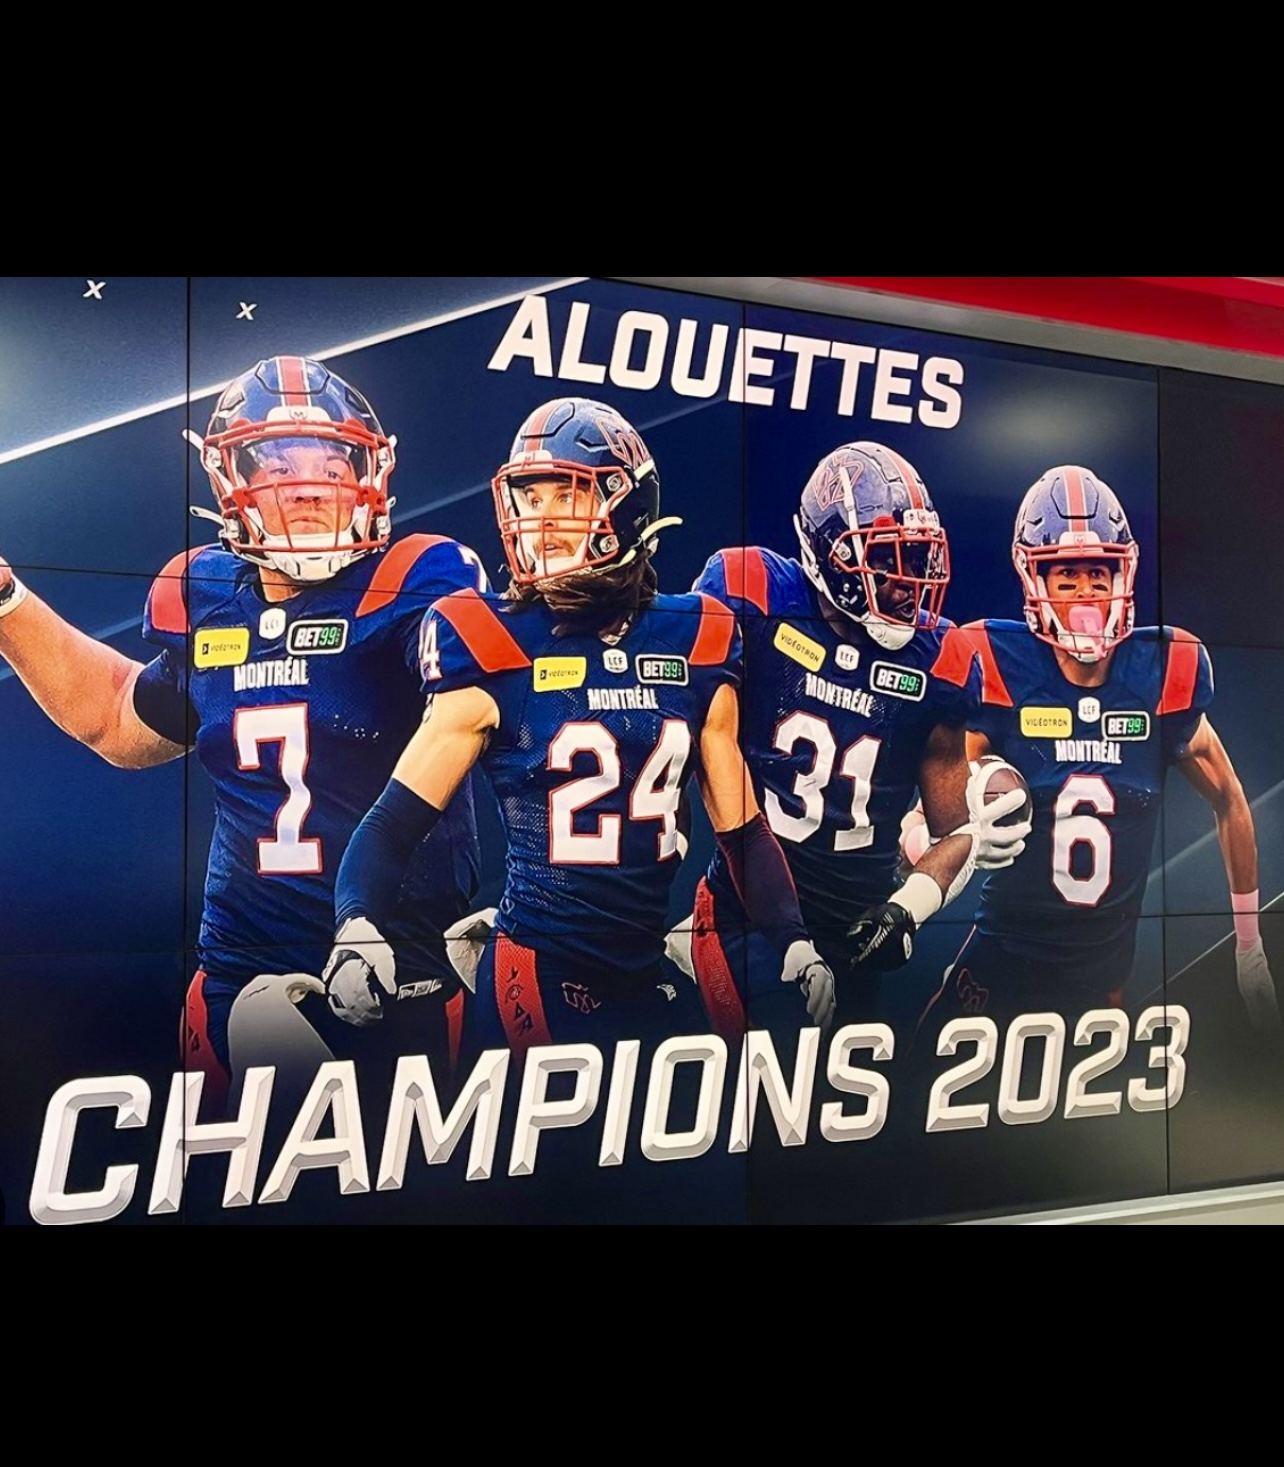 Une bannière célébrant la victoire des Alouettes comme champions en 2023 avec les mots « Alouettes Champions 2023 ».